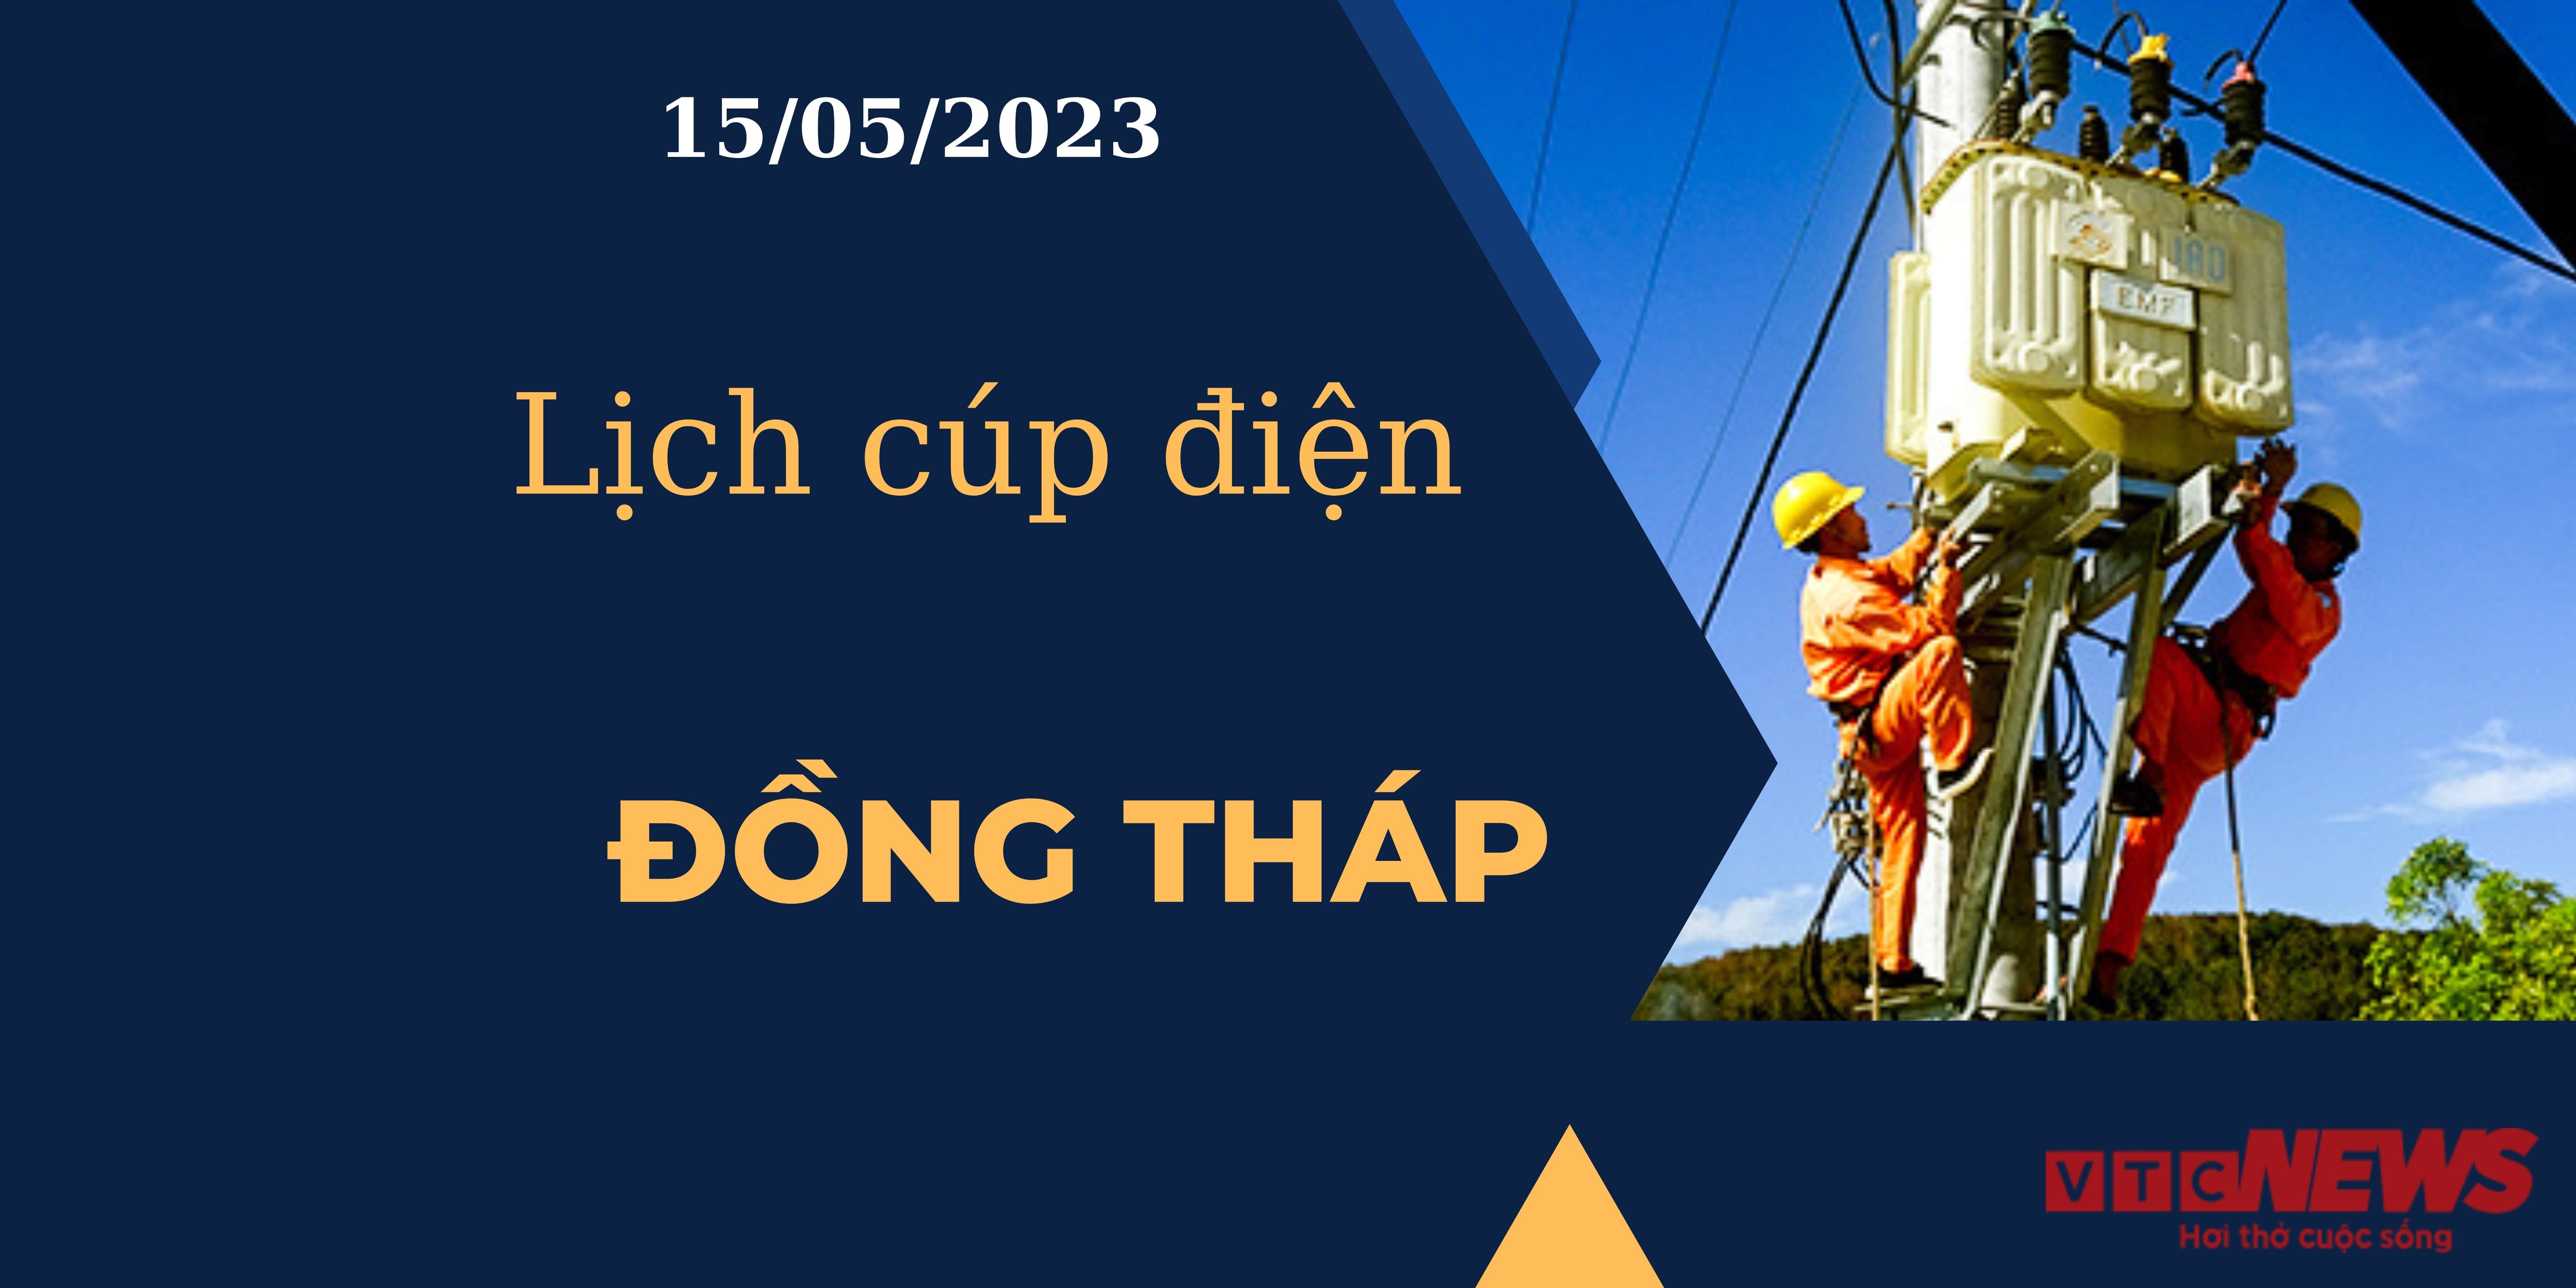 Lịch cúp điện hôm nay ngày 15/05/2023 tại Đồng Tháp - 1